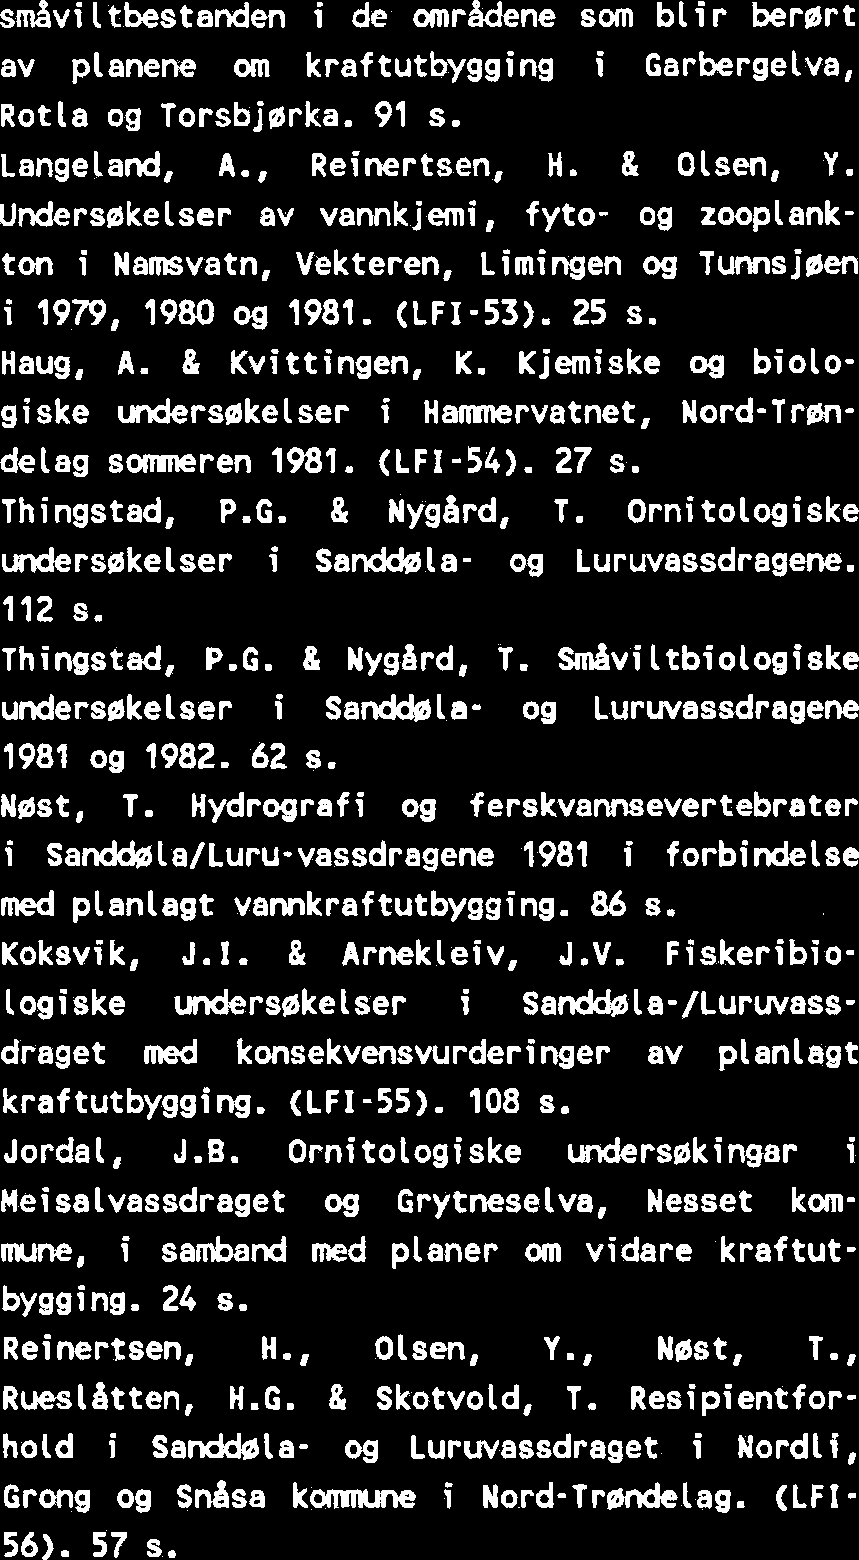 Undersakelser av vannkjemi, fyto- og zooplankton i Namsvatn, Vekteren, Limingen og Tunnsjsen i 1979, 1980 og 1981. (LFI-53). 25 s. Haug, A. & Kvittingen, K.